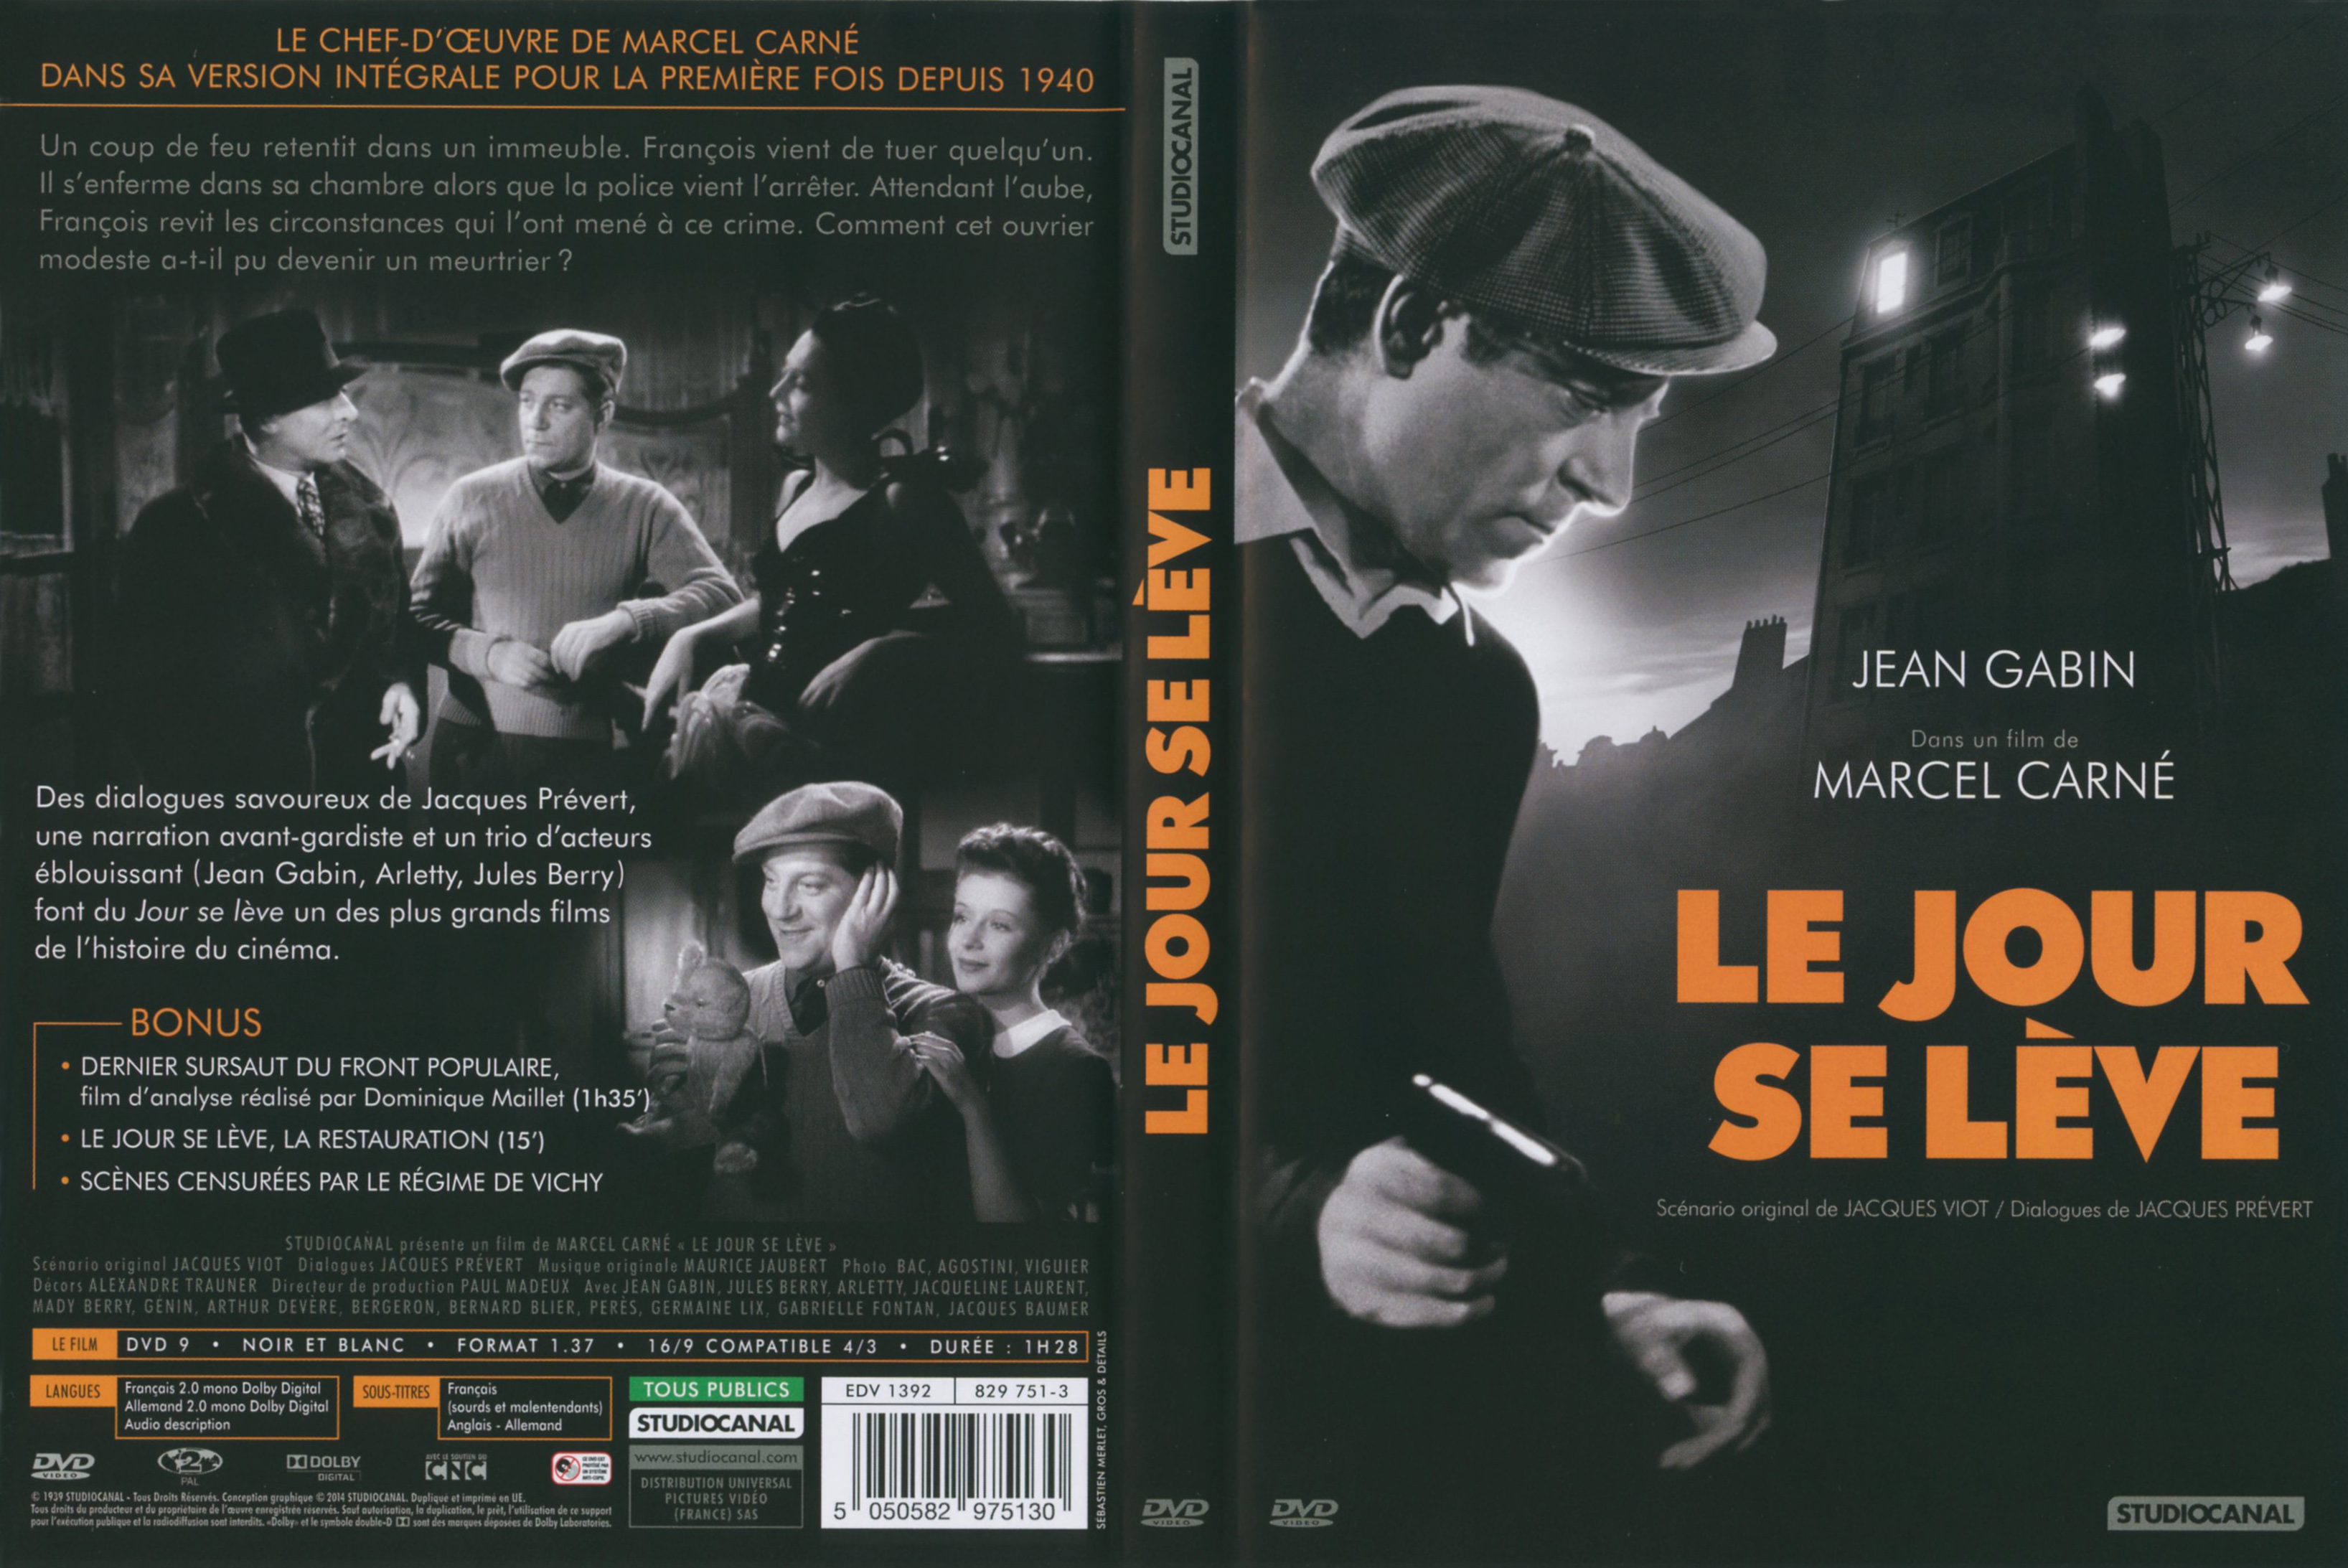 Jaquette DVD Le Jour se lve v4